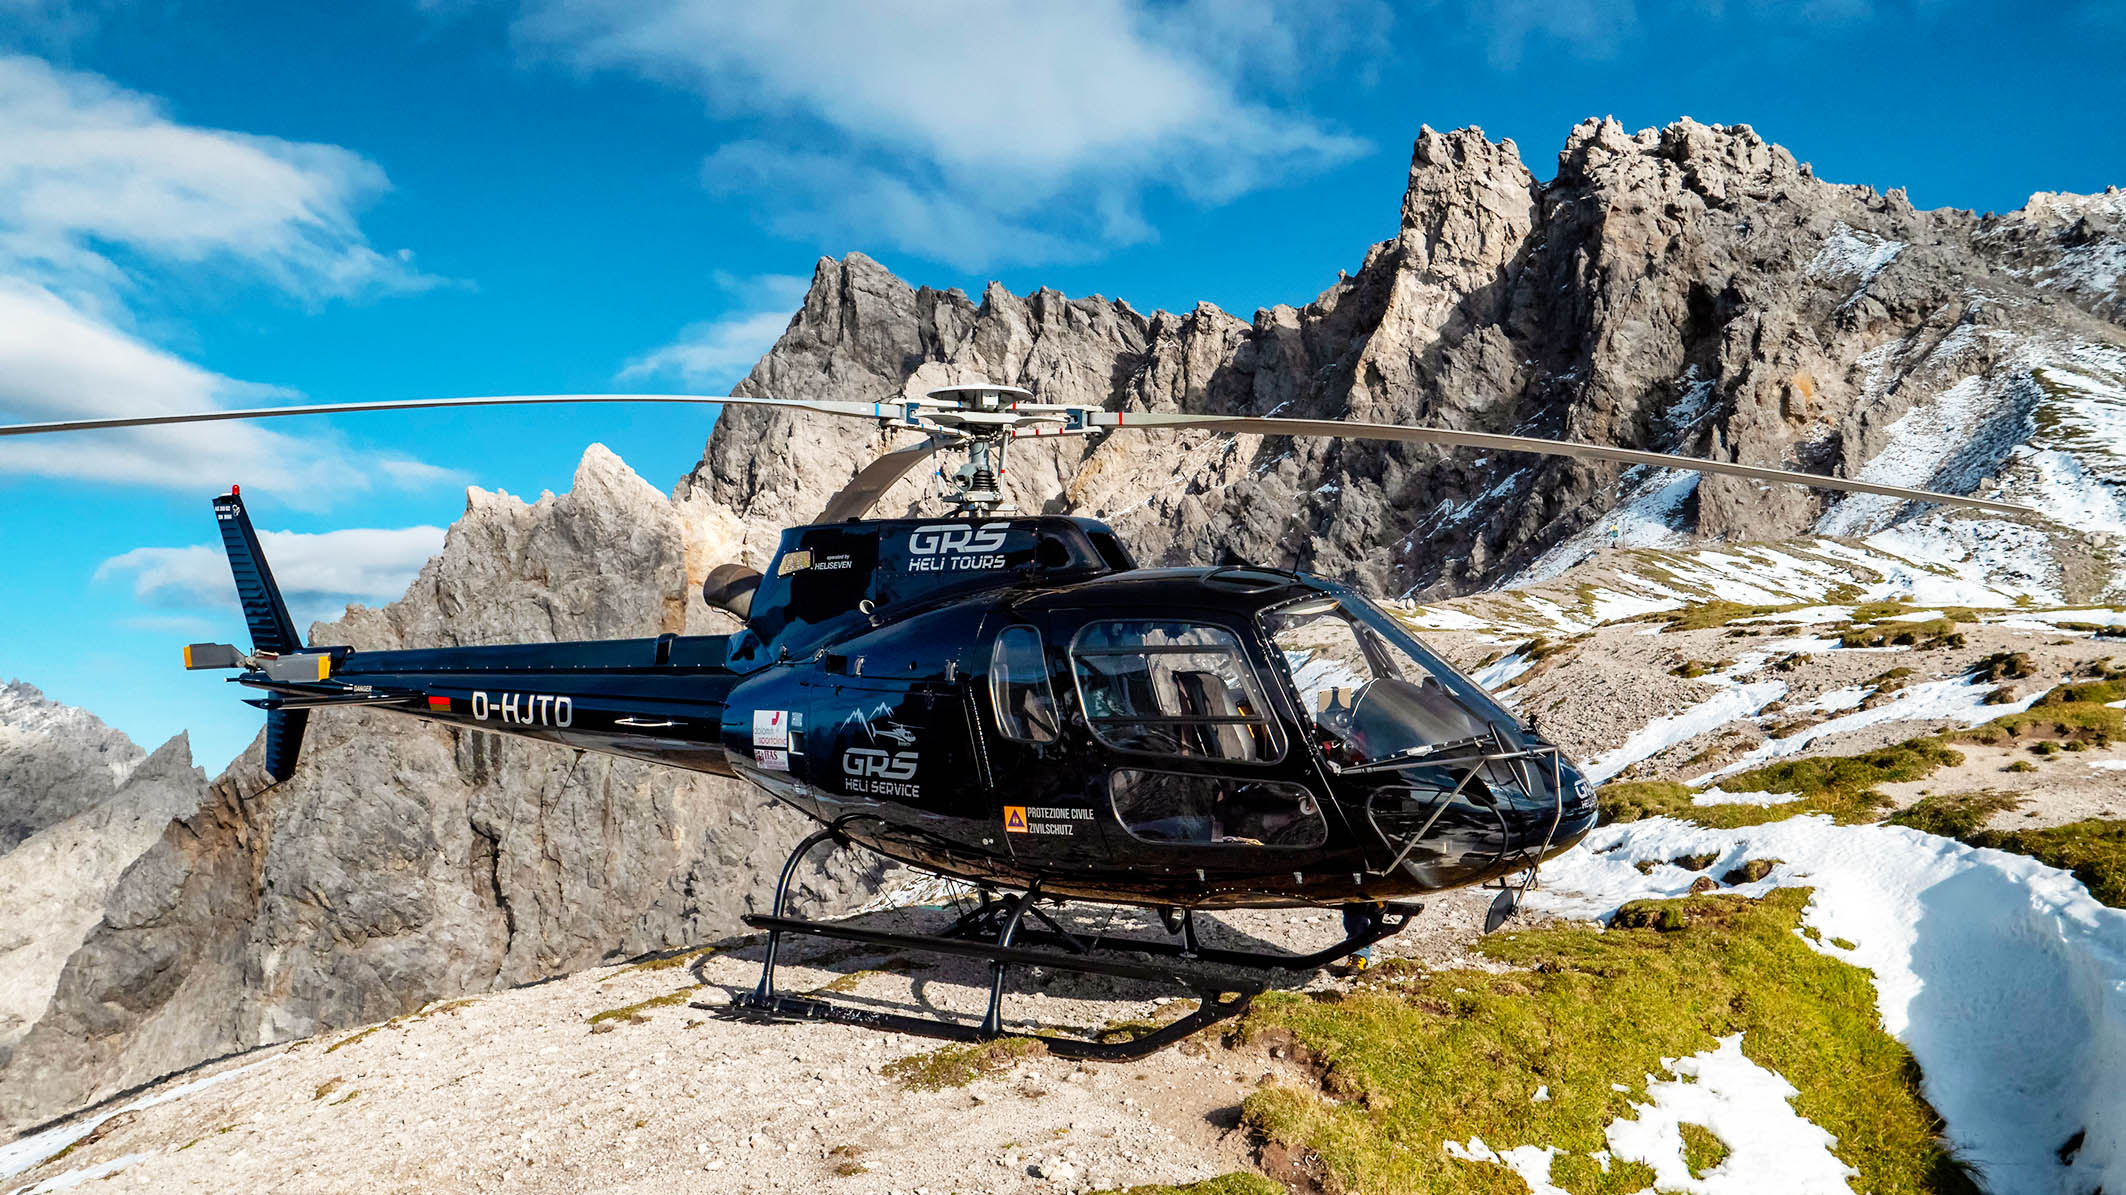 Bild zeigt das einen Helikopter vor einer felsigen Kulisse in den Alpen. (verweist auf: Mit dem Helikopter im Allgäu)